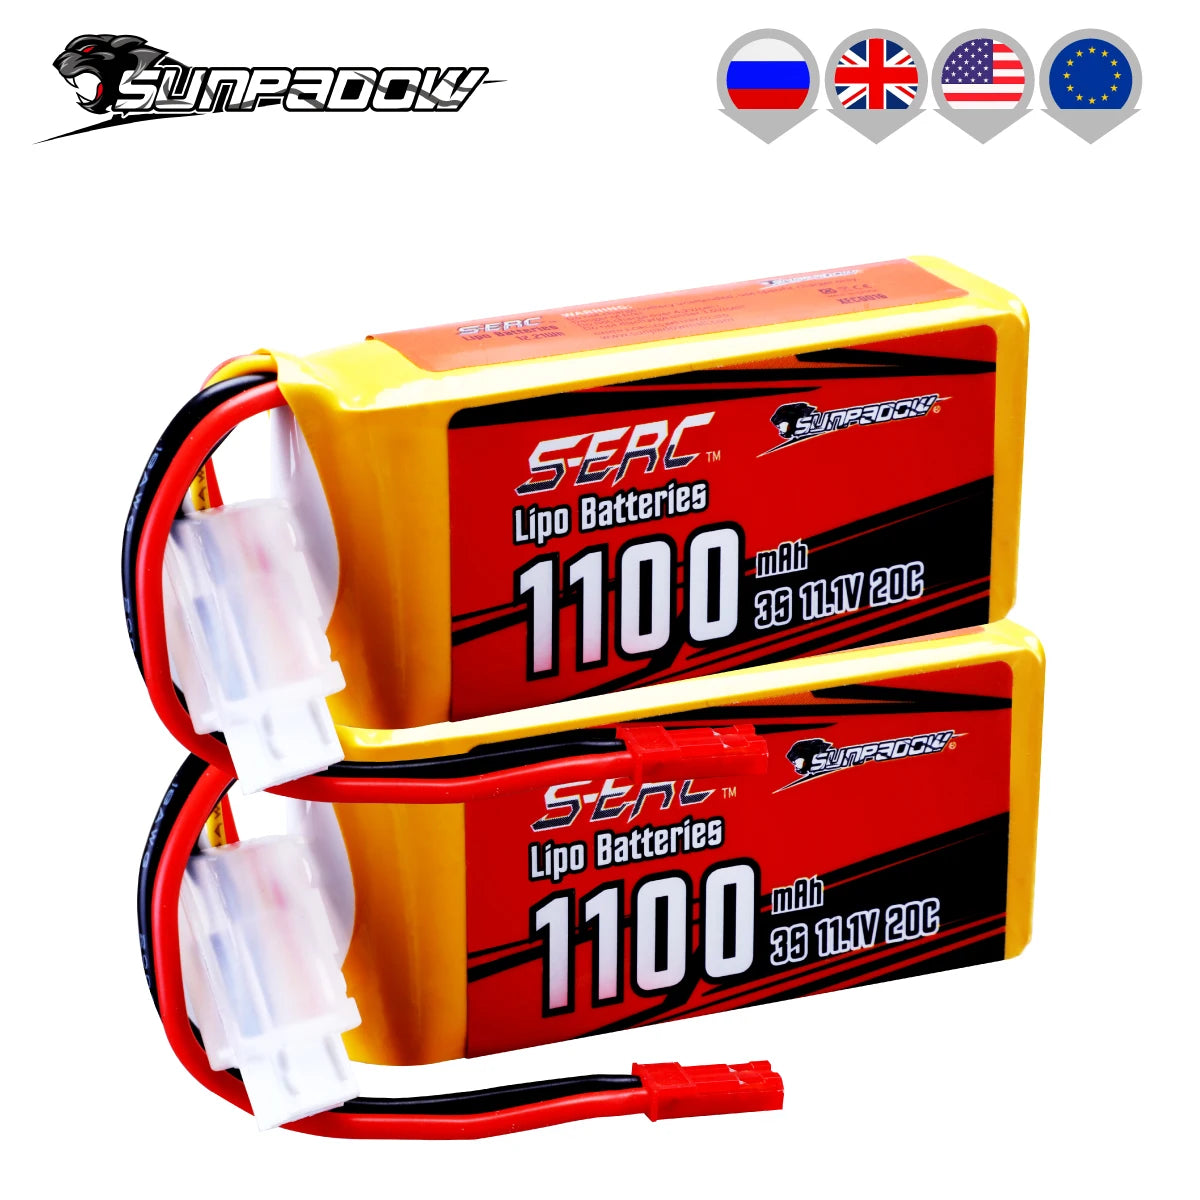 Sunpadow Lipo Battery, '#ZIV SUne DSE 5ENL Batteries 11002 MA